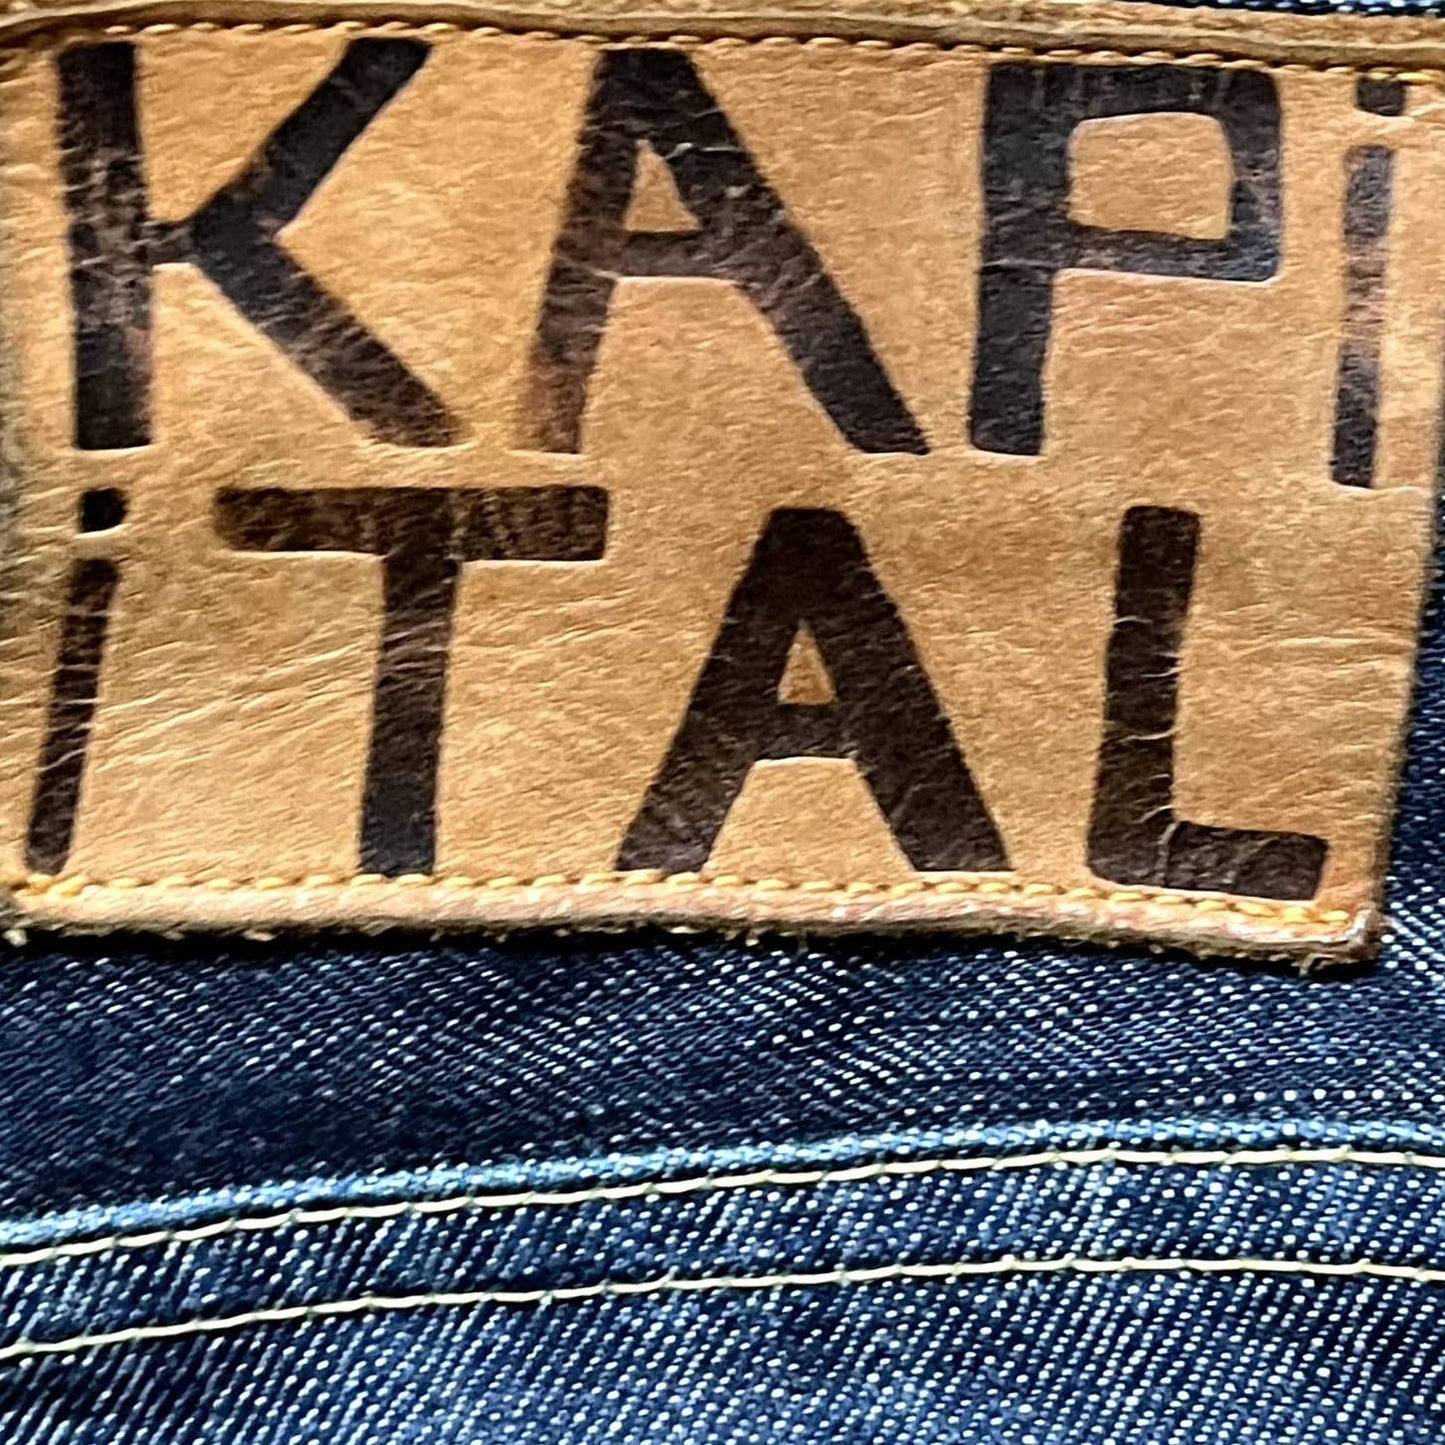 Kapital Vintage Wash Jeans